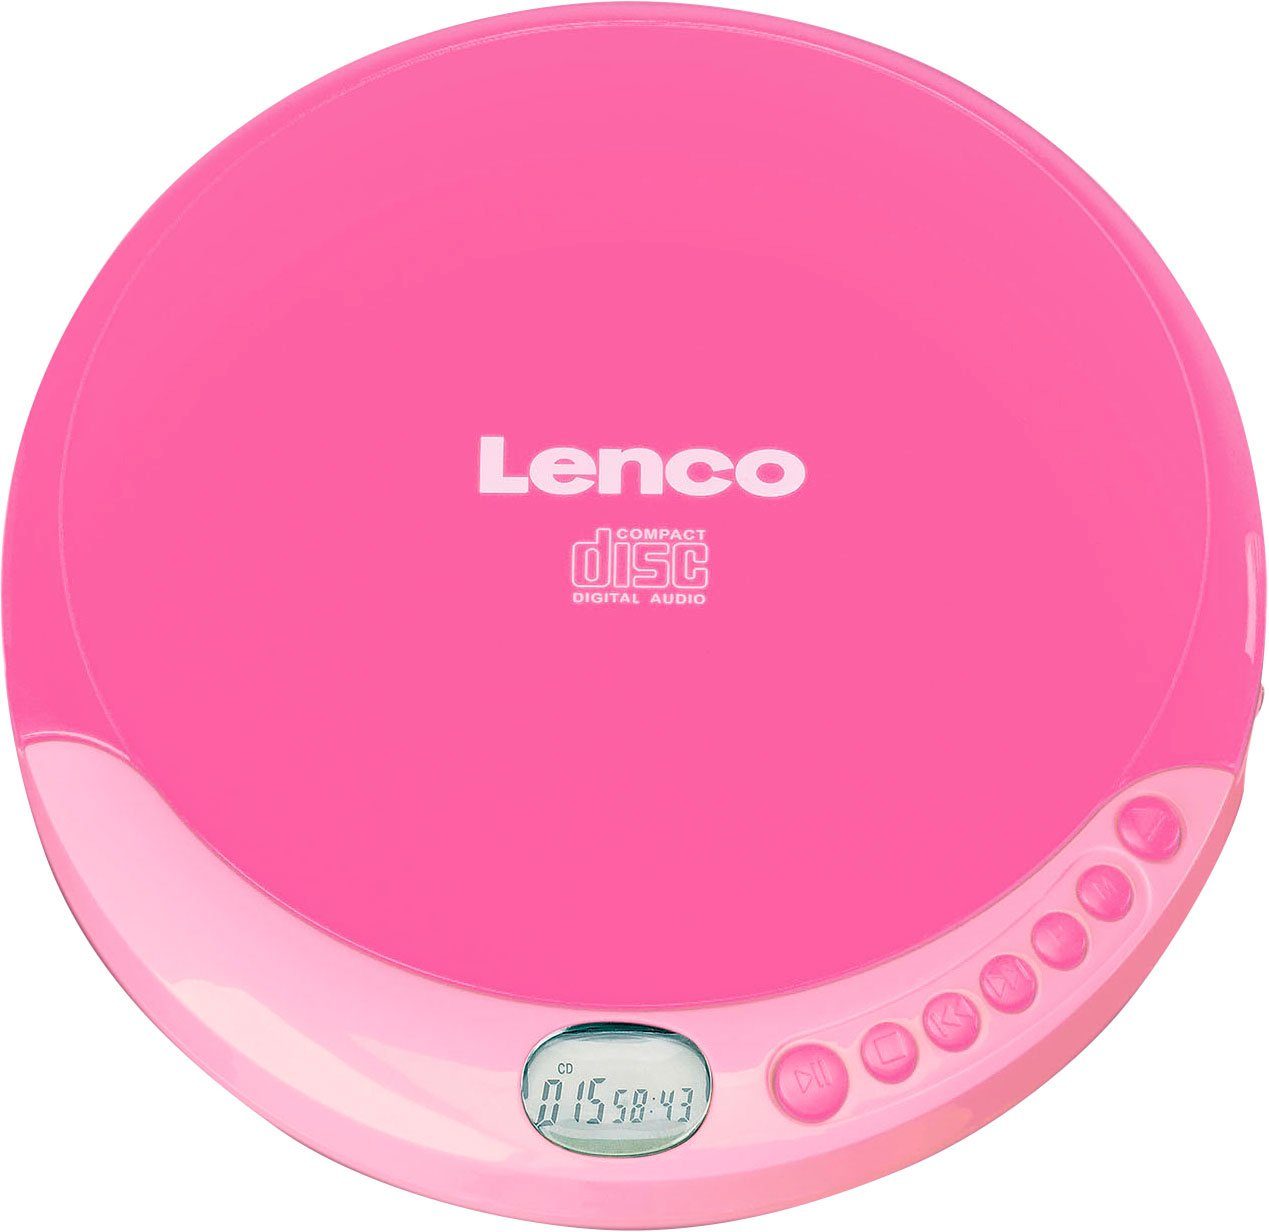 CD-011 CD-Player Lenco rosa